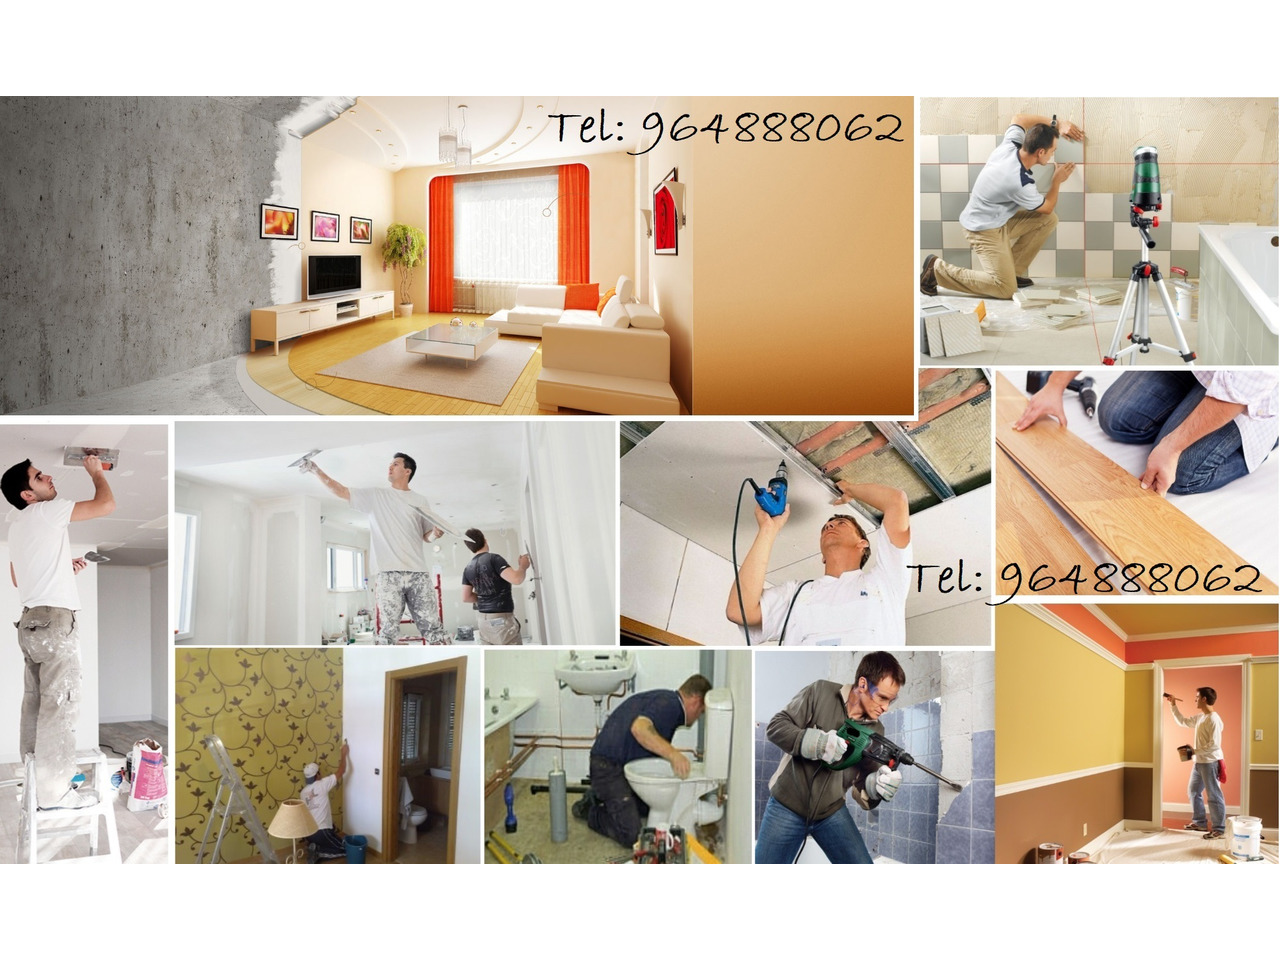 Renovação, Remodelação de Apartamentos / Casas, desde 100€/m2 - 1